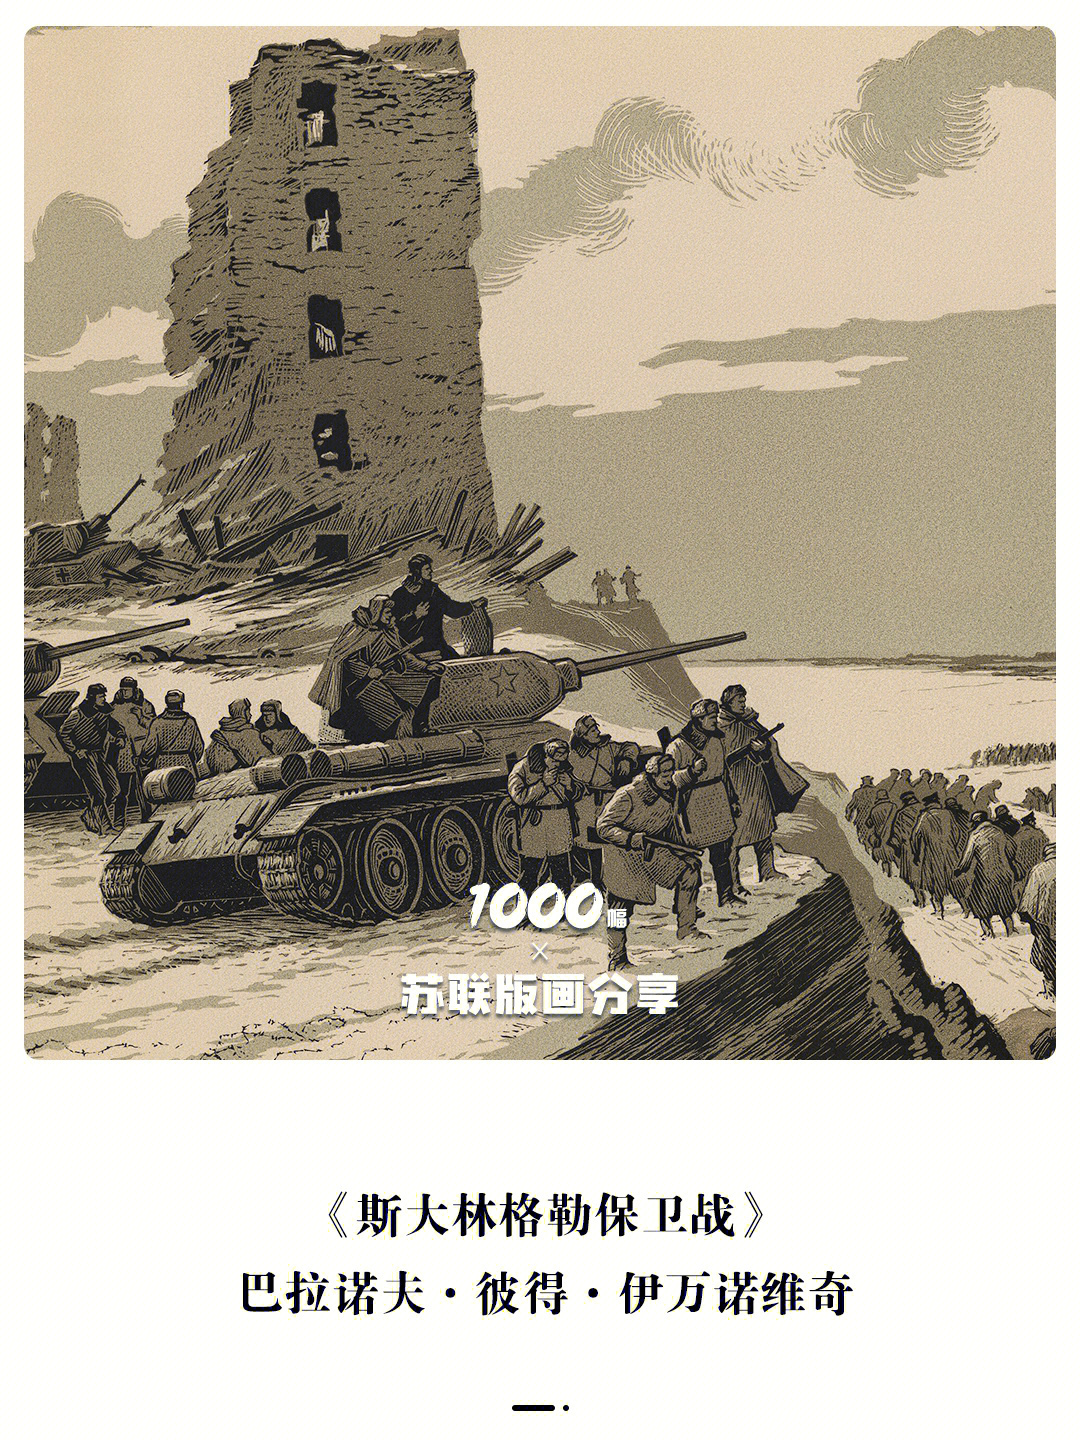 1000幅苏联版画分享vol60斯大林格勒保卫